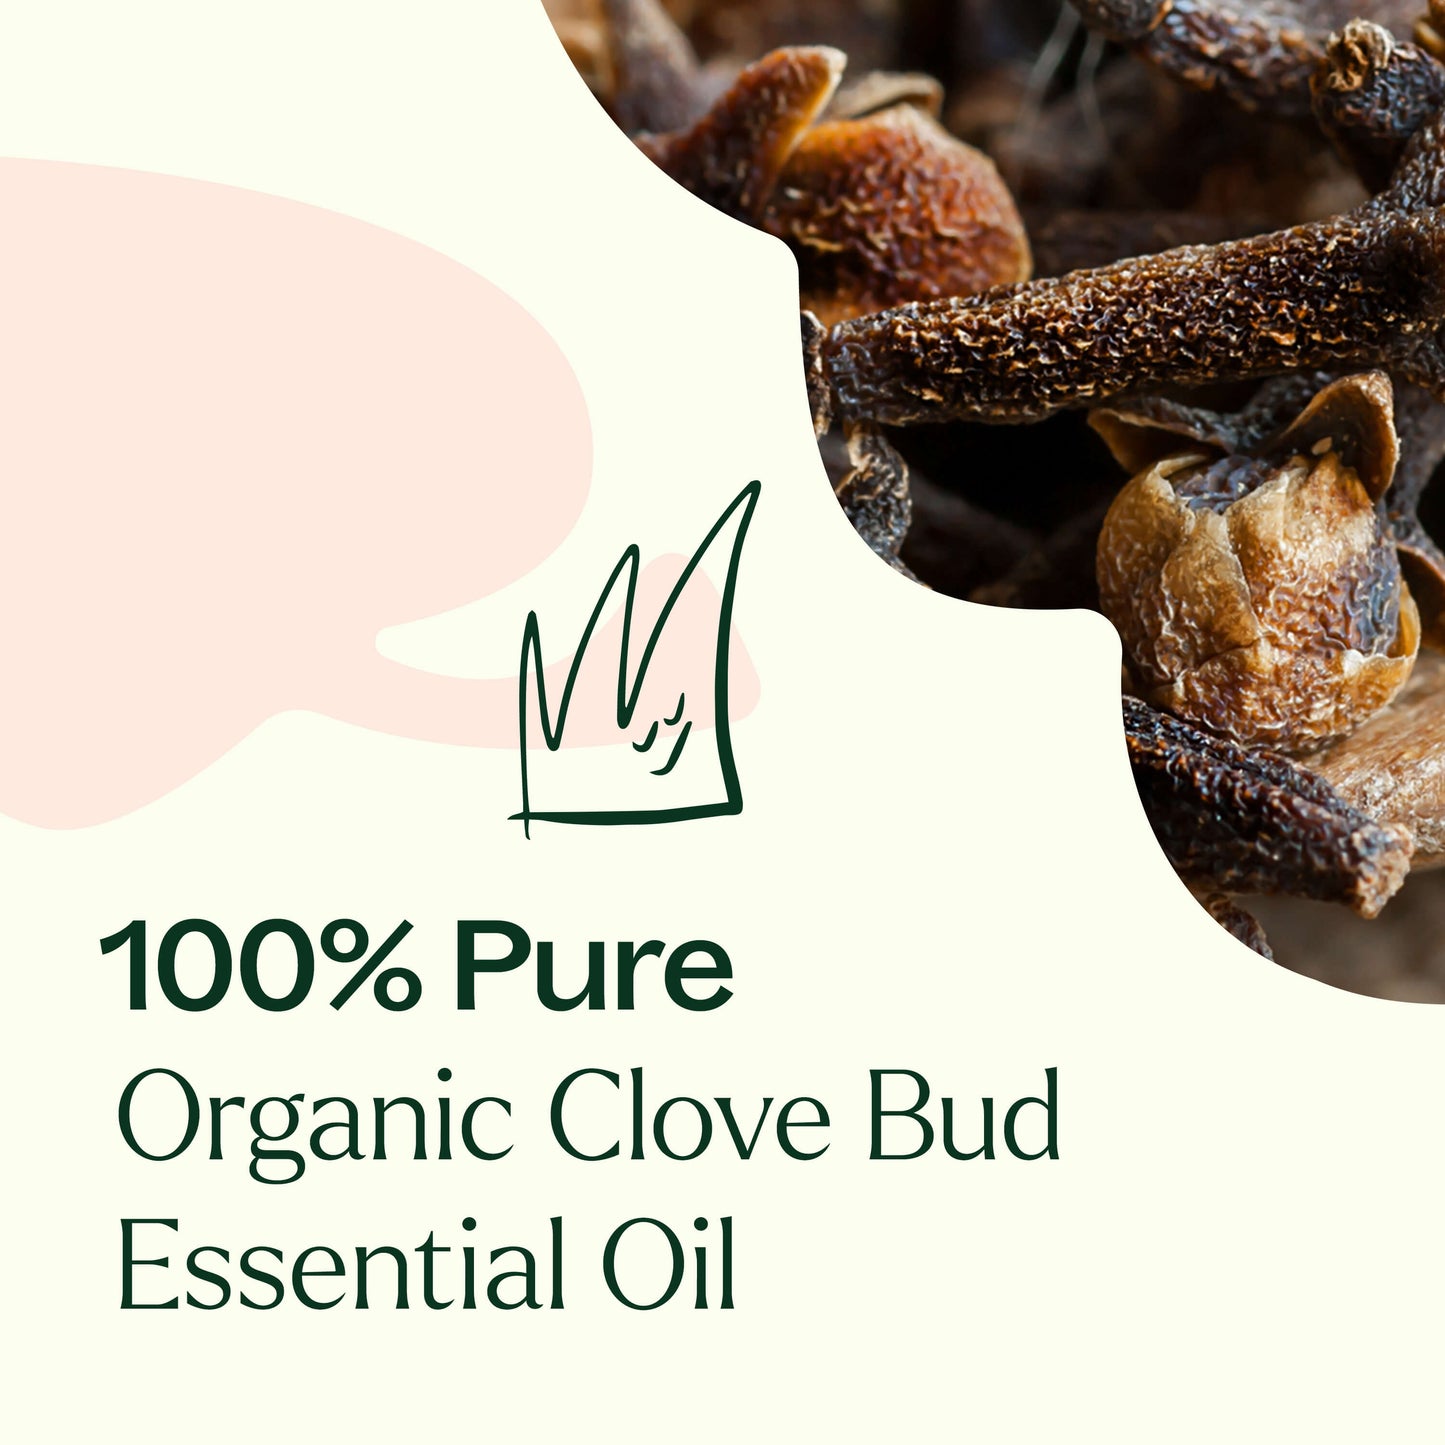 100% pure Organic Clove Bud Essential Oil